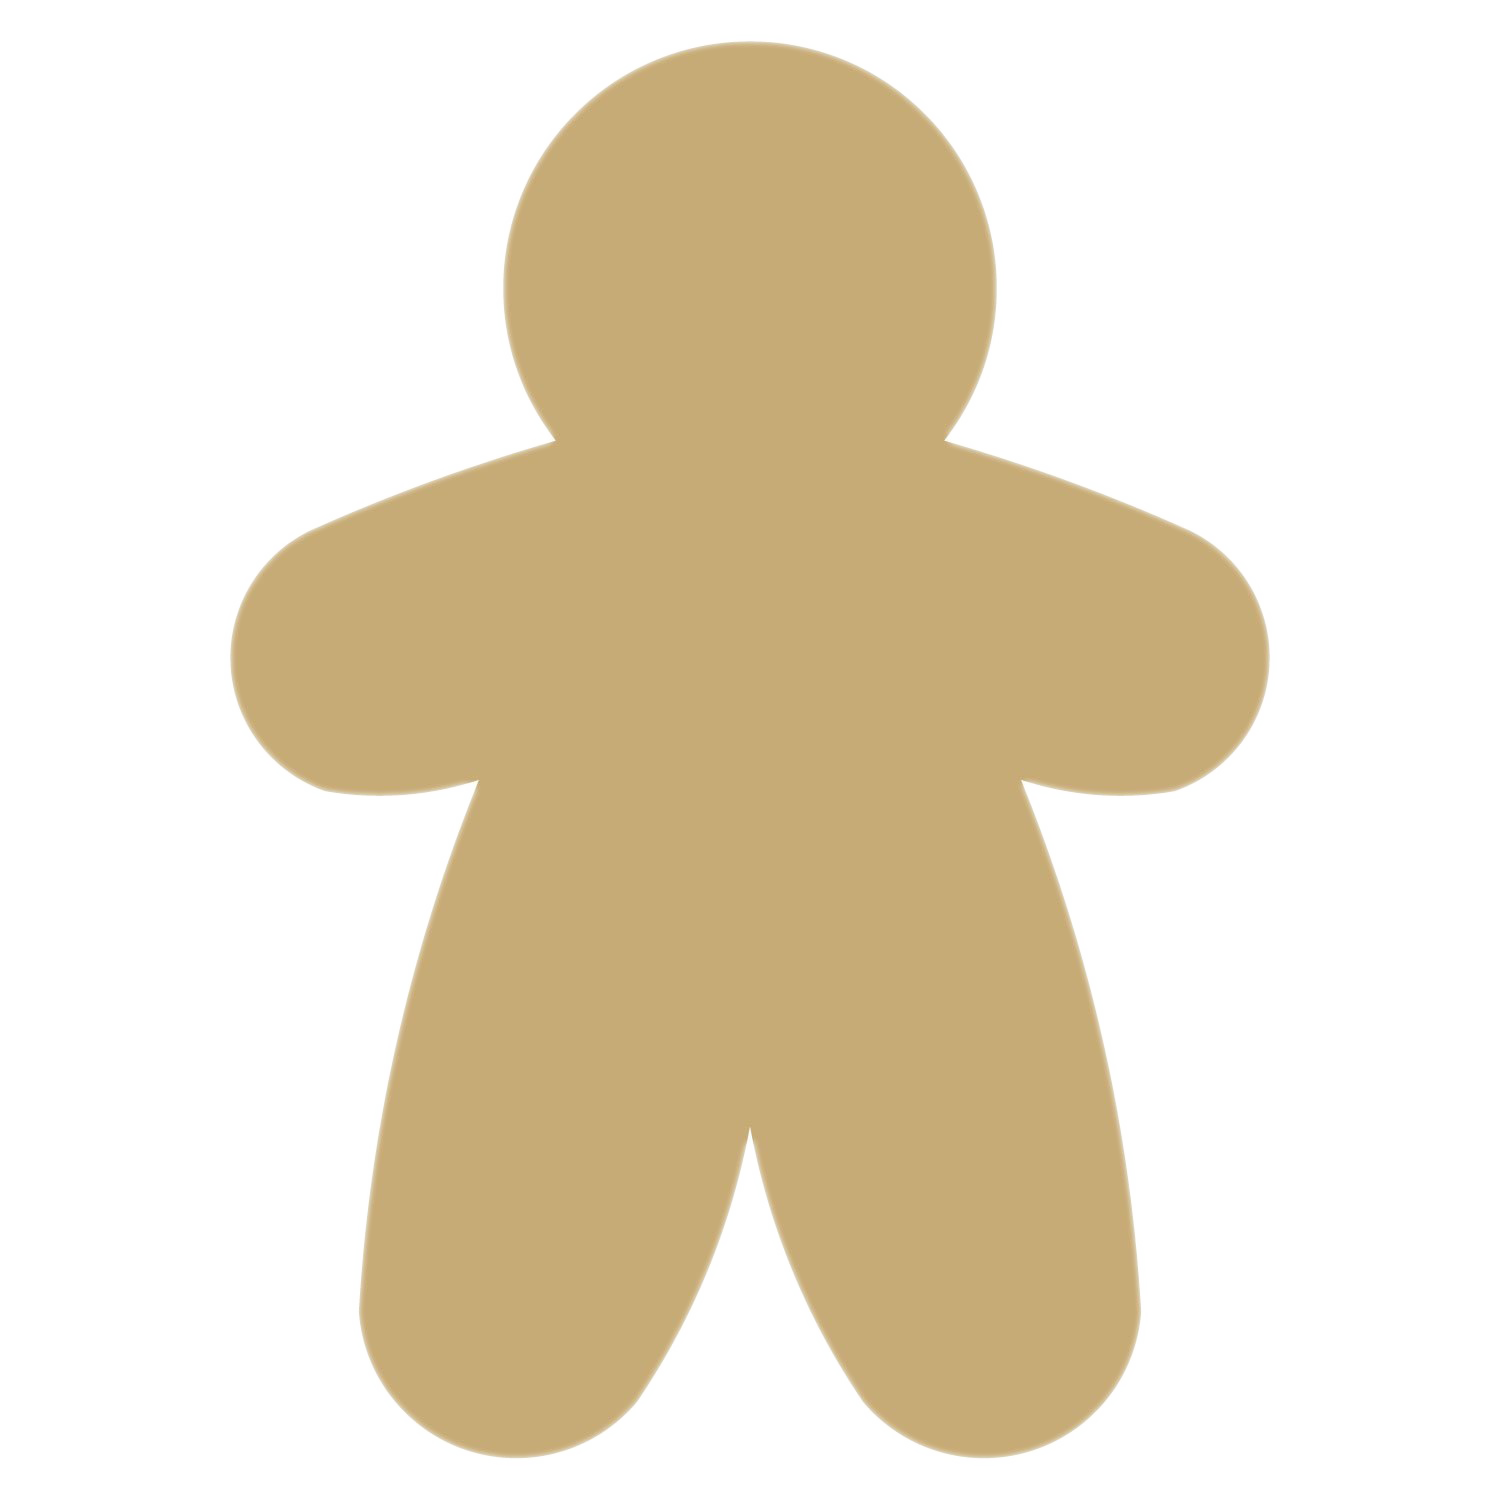 Gingerbread Man PNG mataas na kalidad na Imahe